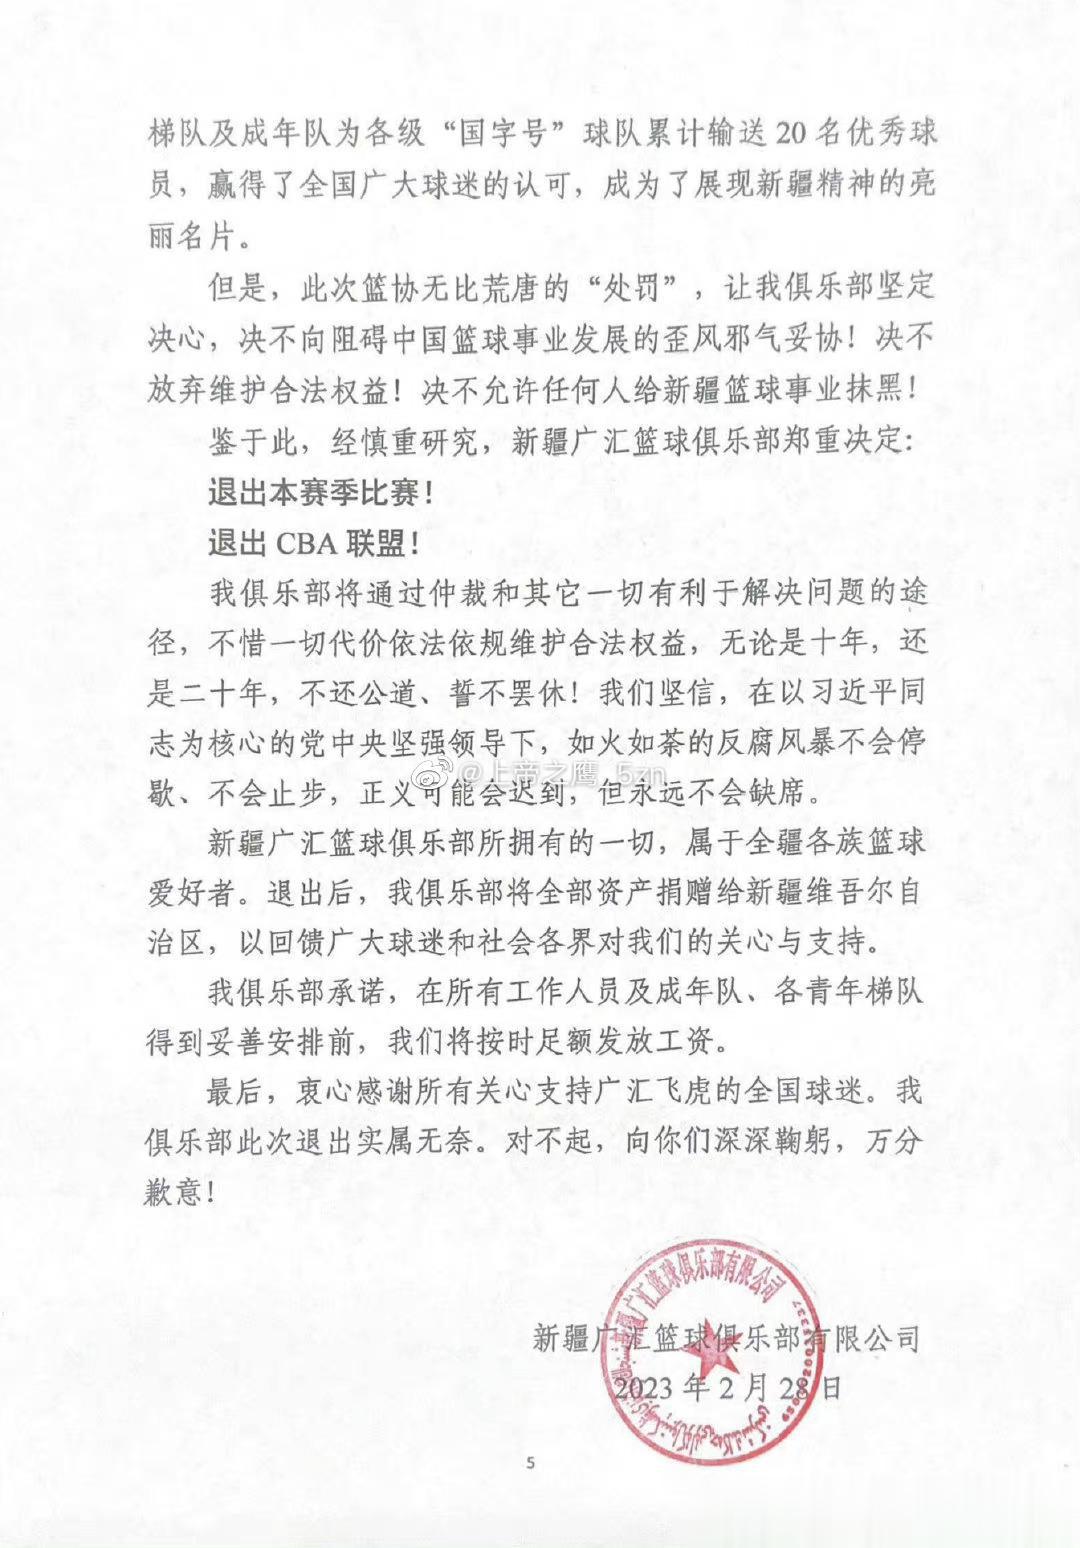  新疆广汇俱乐部深夜发表声明，怒喷篮协的处罚“严重错误、无理荒诞”，并宣布退出C(5)